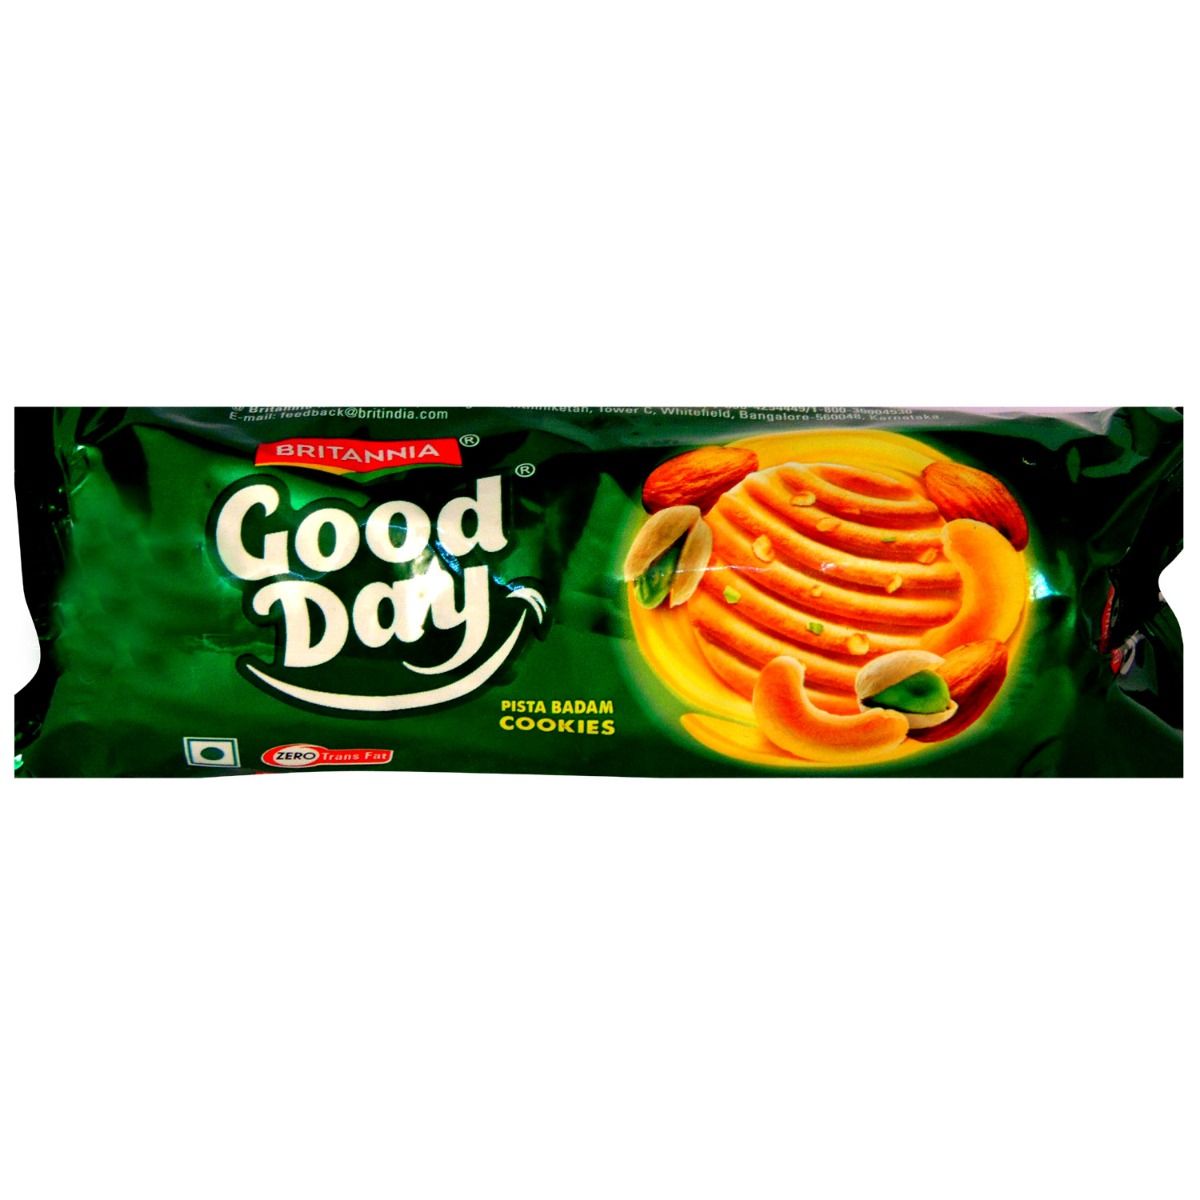 Buy Britania Good Day Pista Badam Cookies, 100 gm Online